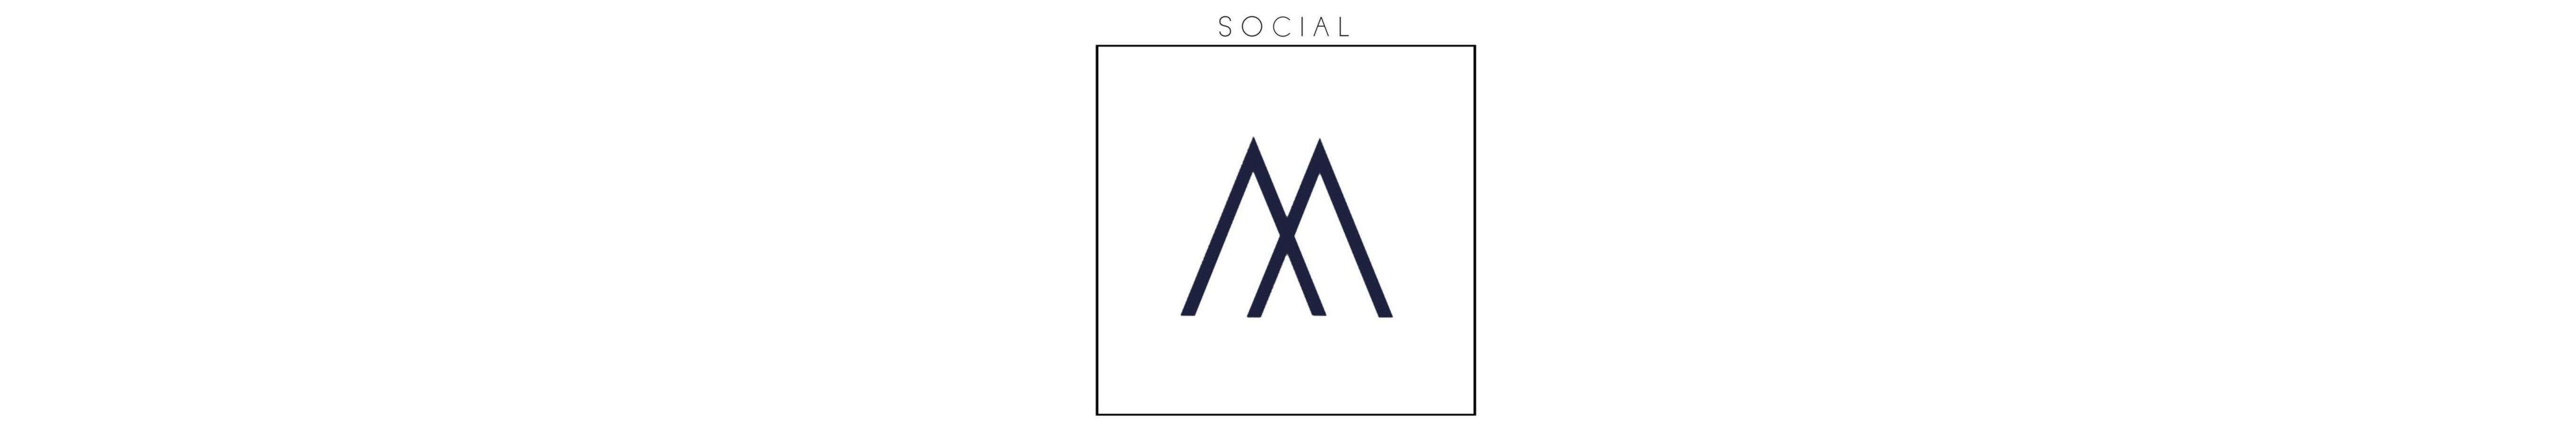 Social media marketing agency based in Marbella